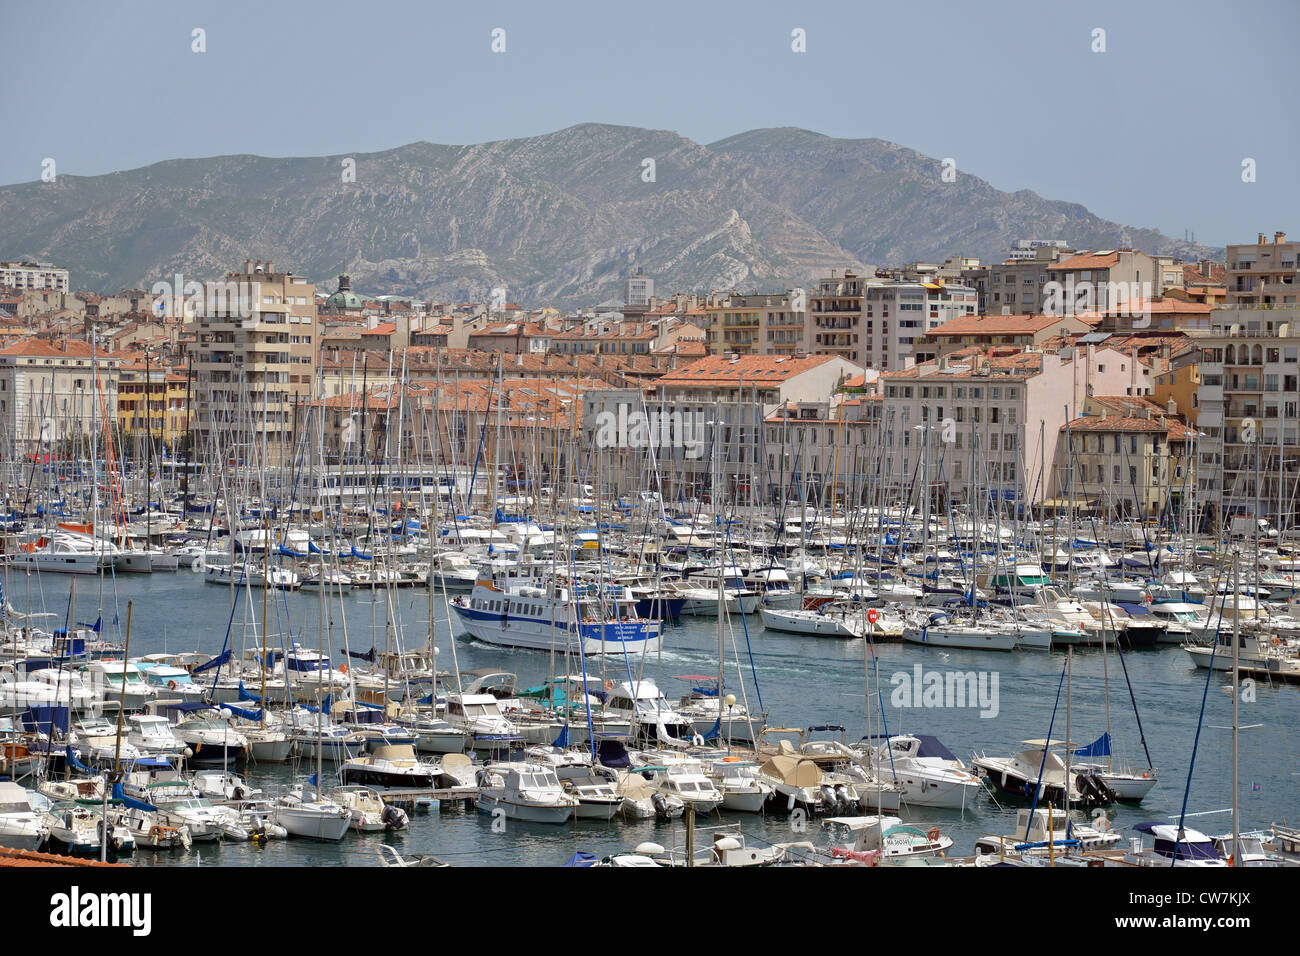 Vieux-Port de Marseille (old port), Marseille, Bouches-du-Rhône Department, Provence-Alpes-Côte d'Azur, France Stock Photo